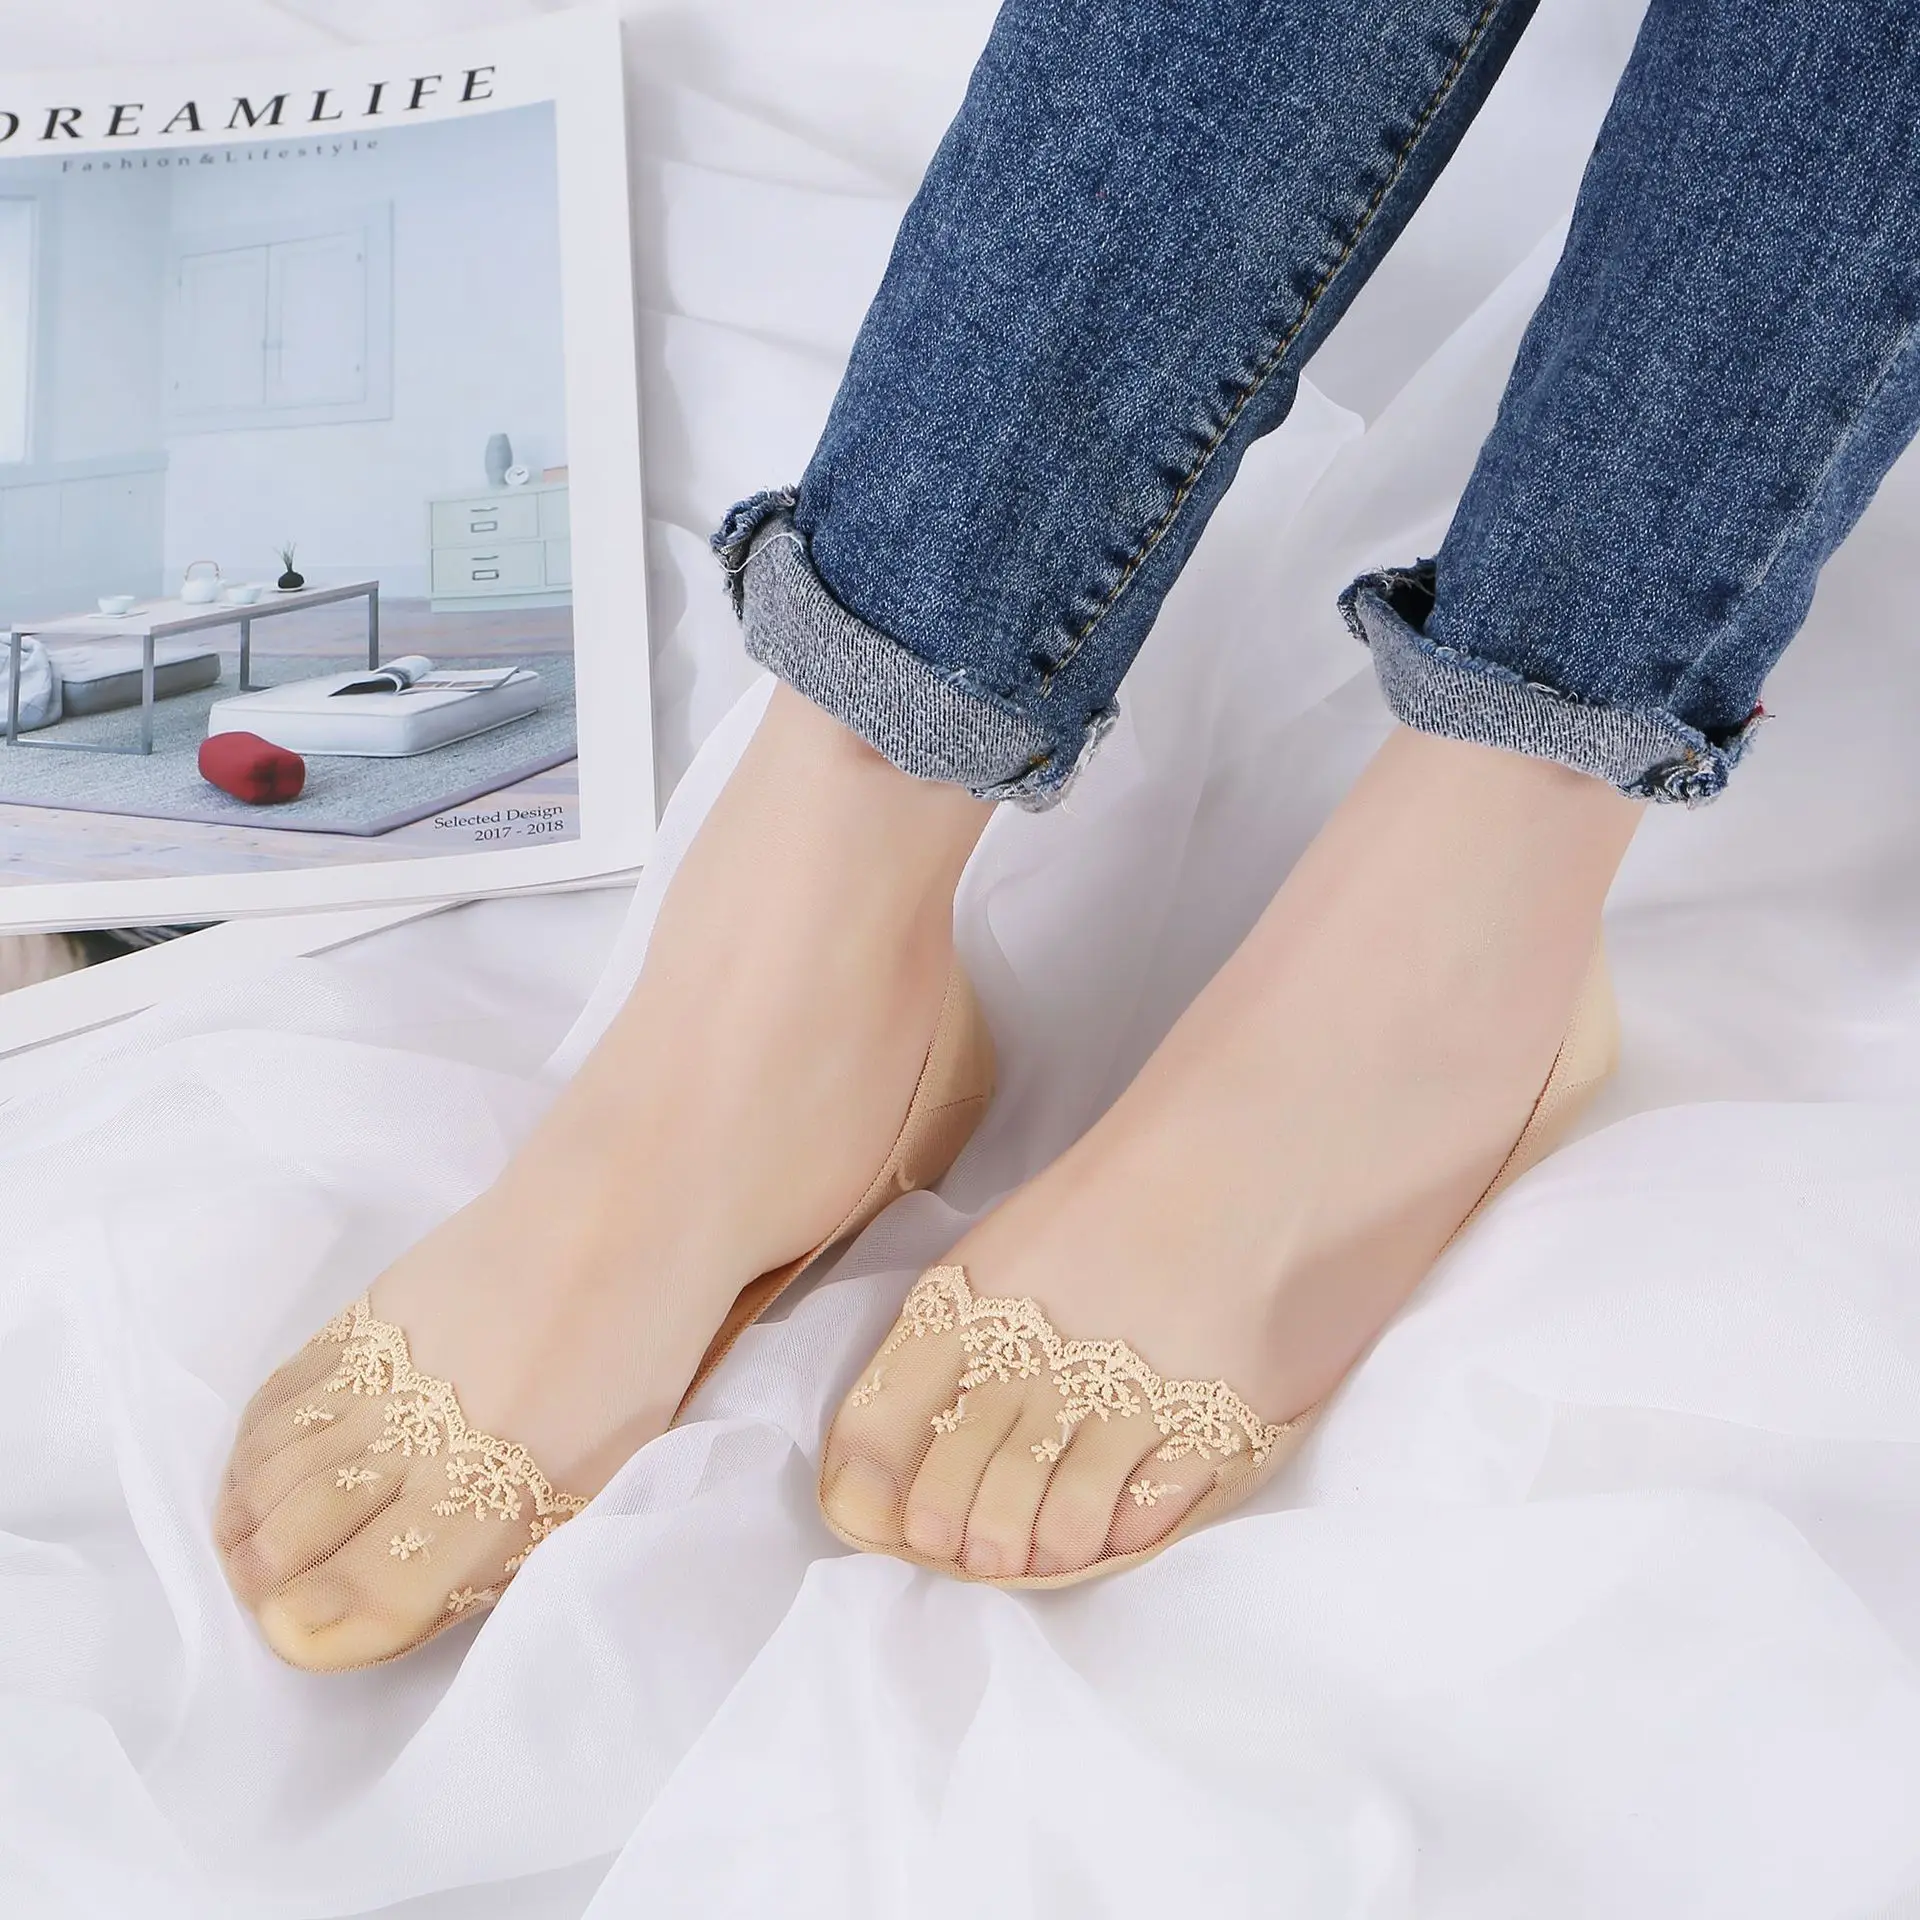 Японские новые 3D носки с перспективой ледяной проволоки следа невидимые носки с закрытым носком носки силикагель скольжения носки кружева